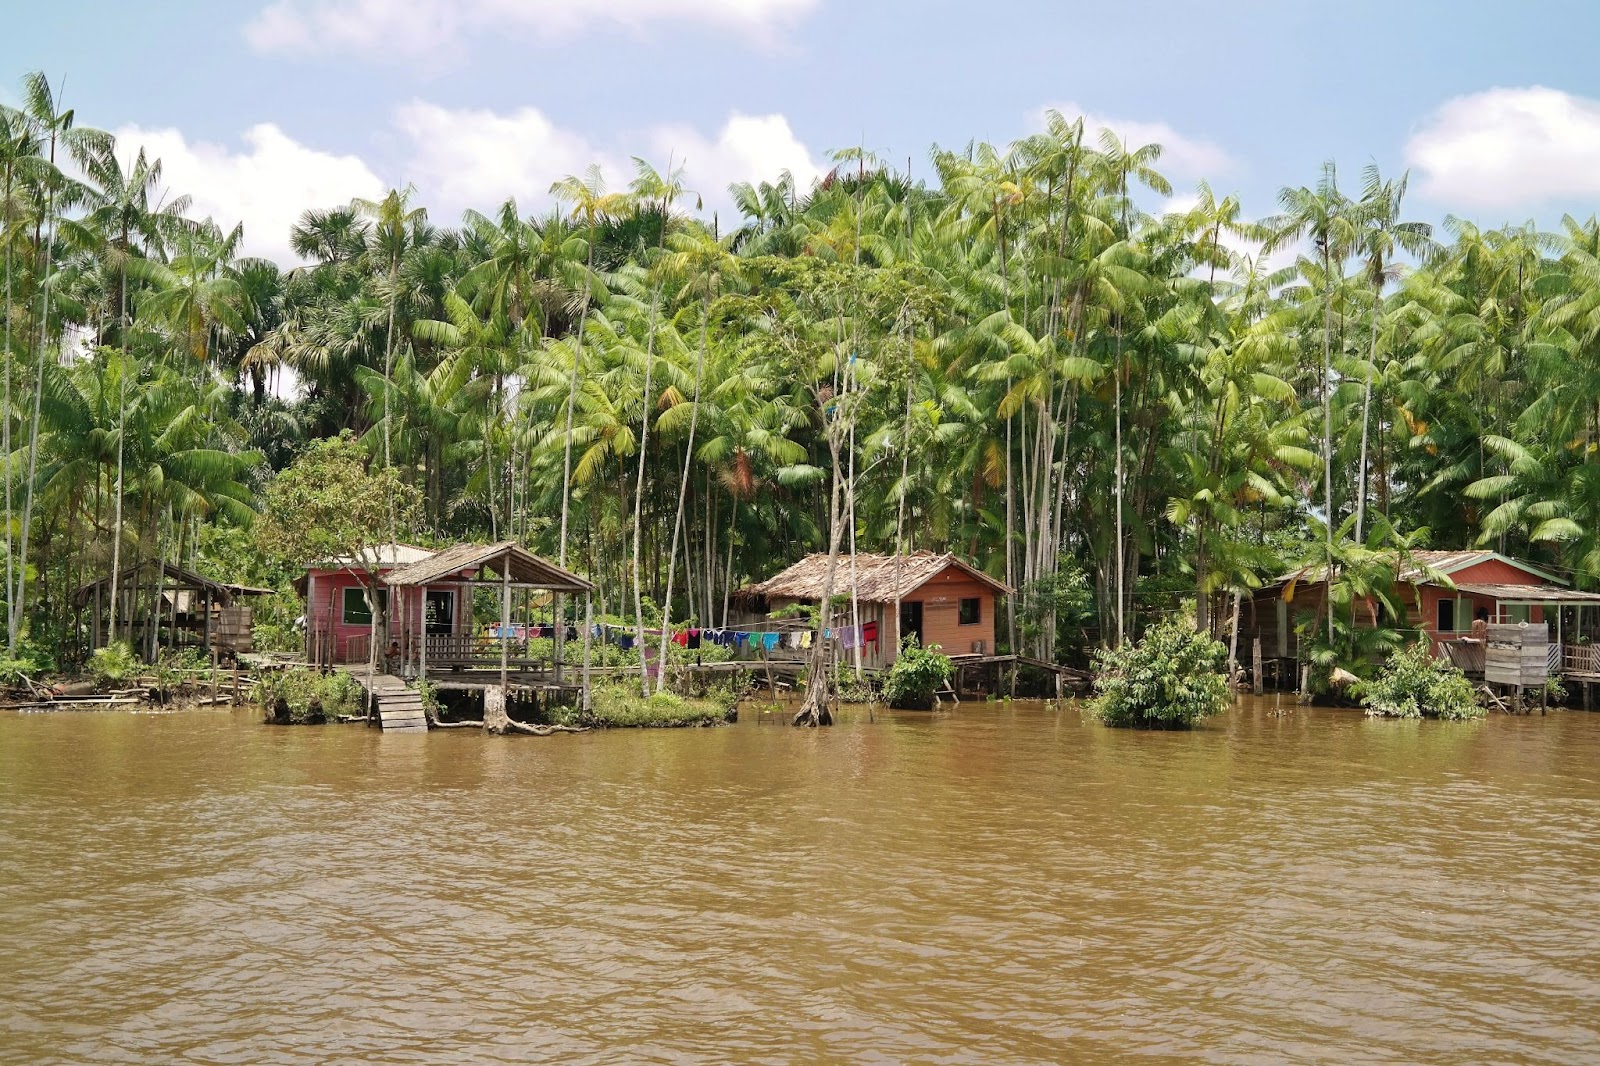 Casas de palafita na beira do Rio no Pará, com a floresta ao fundo